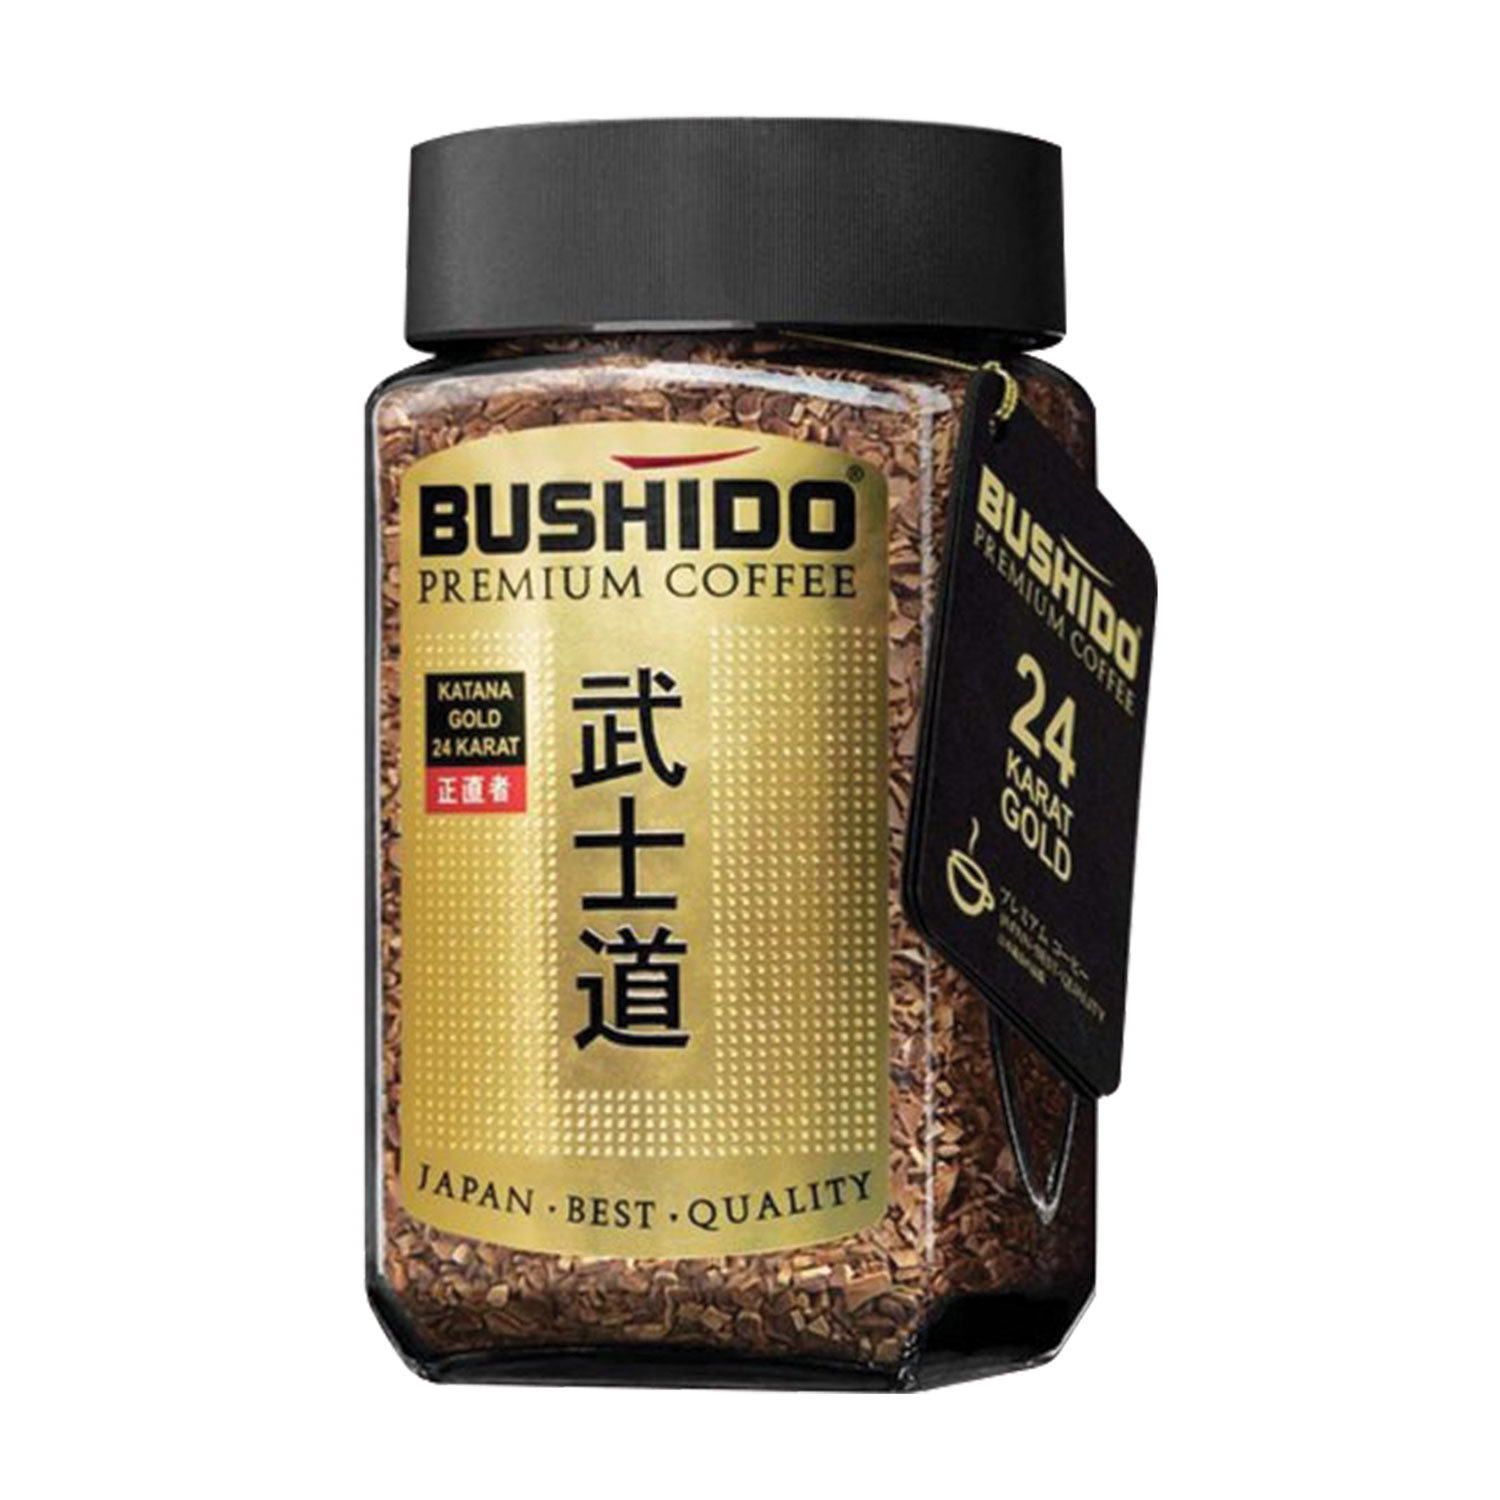 кофе Bushido Red Katana растворимый 100 г